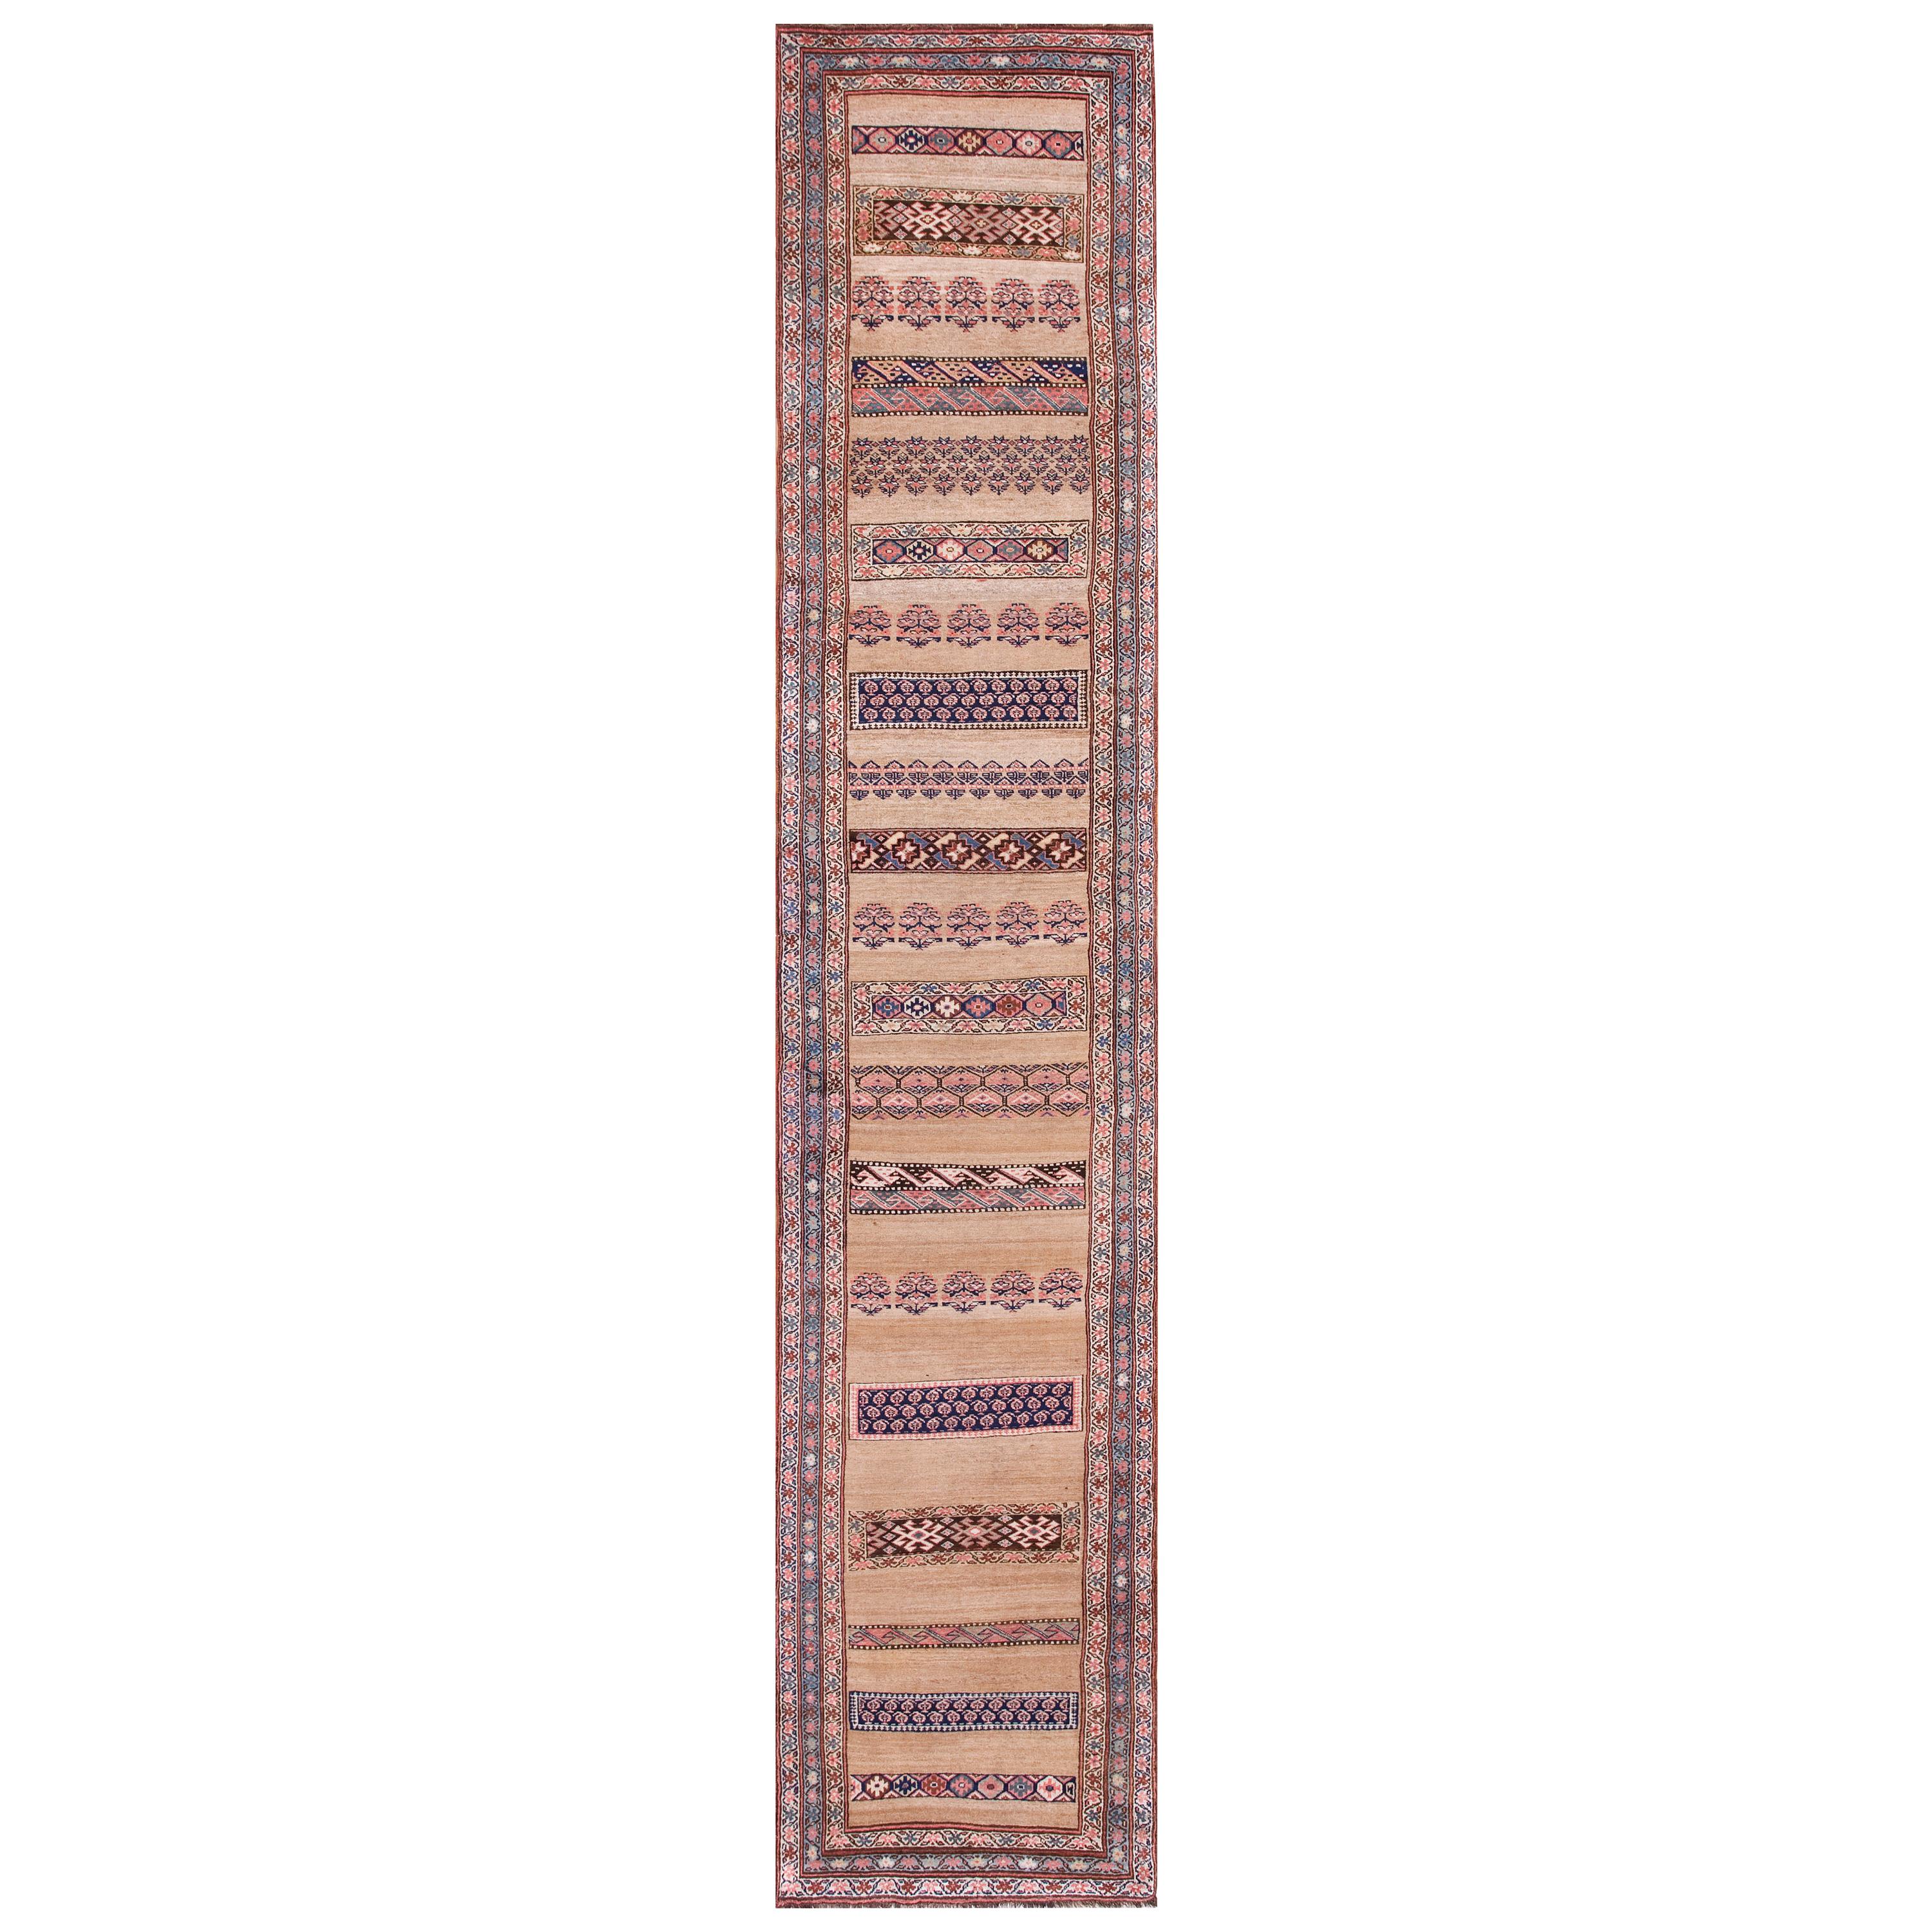 19th Century W. Persian Bijar Carpet ( 3'4" x 17' - 102 x 518 )